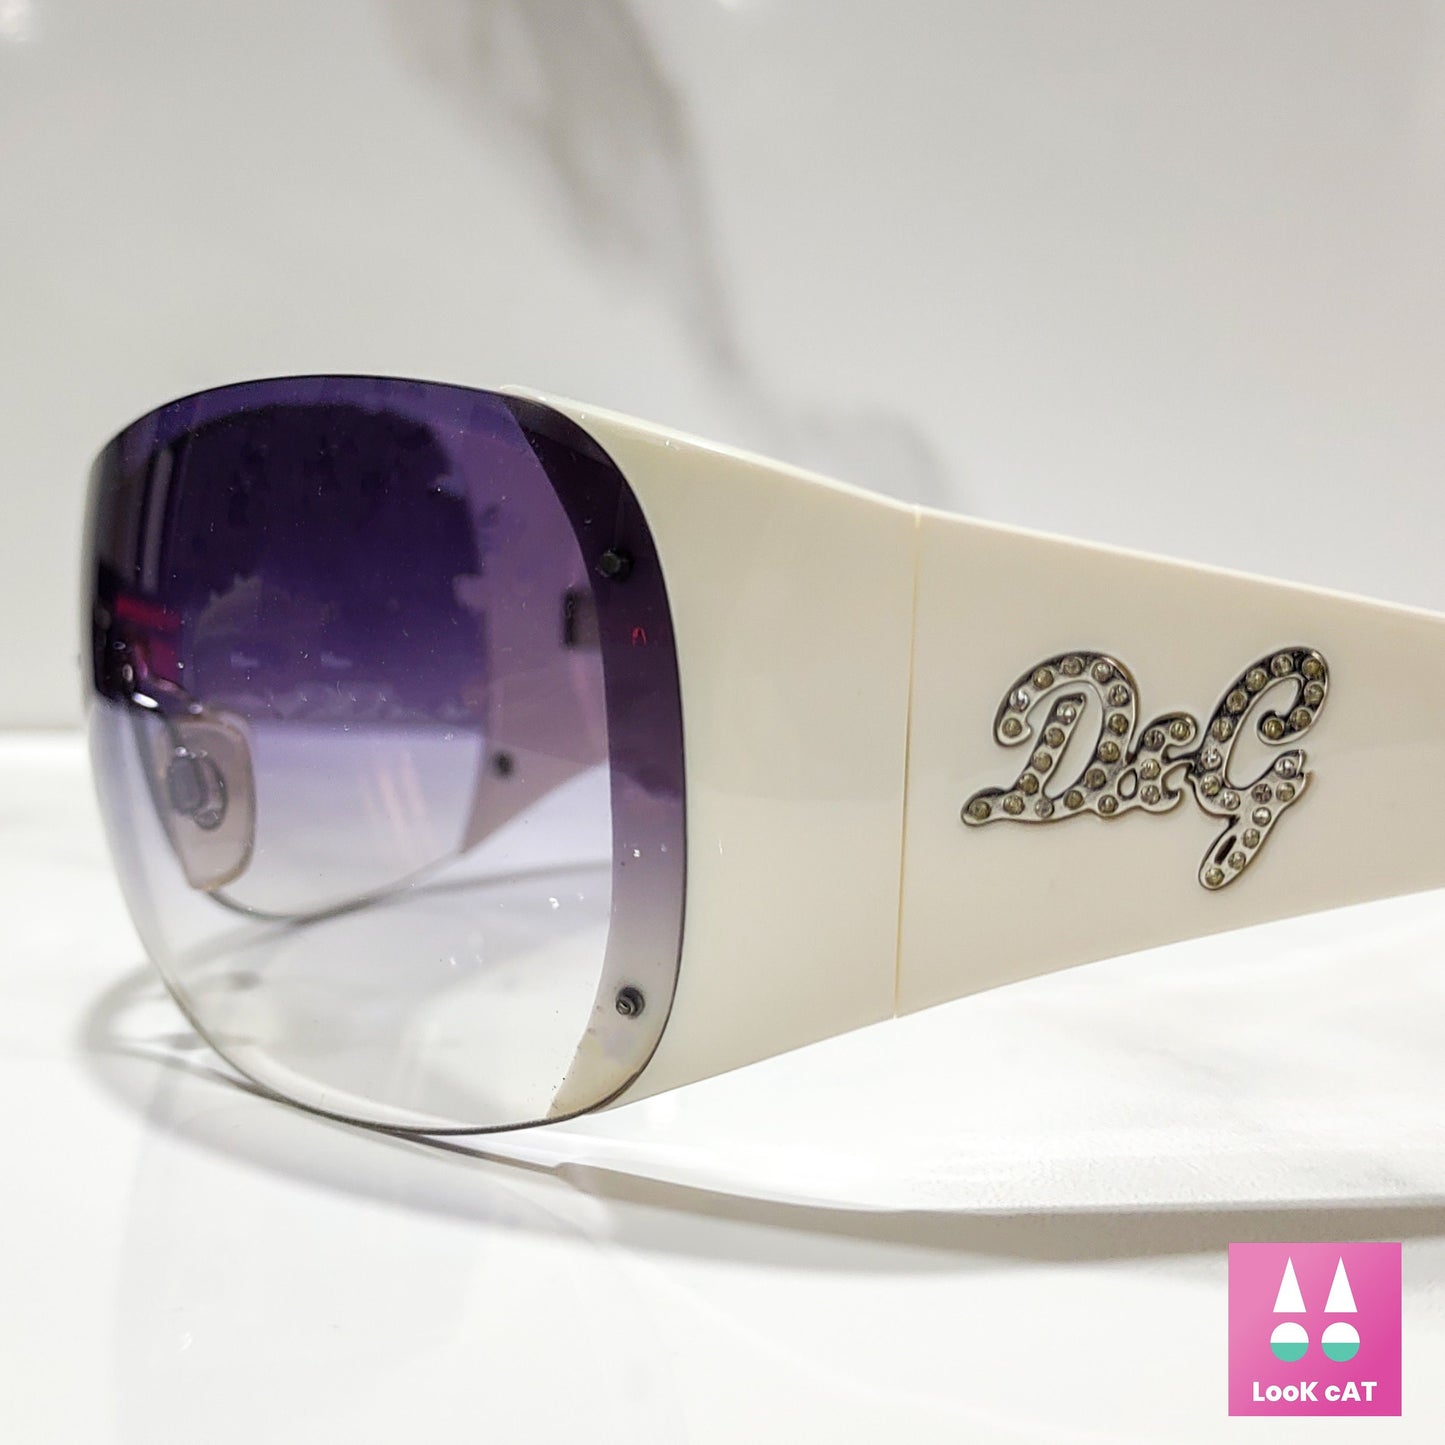 Dolce e Gabbana 8037B Y2K occhiali da sole vintage occhiali gafas wrap shield